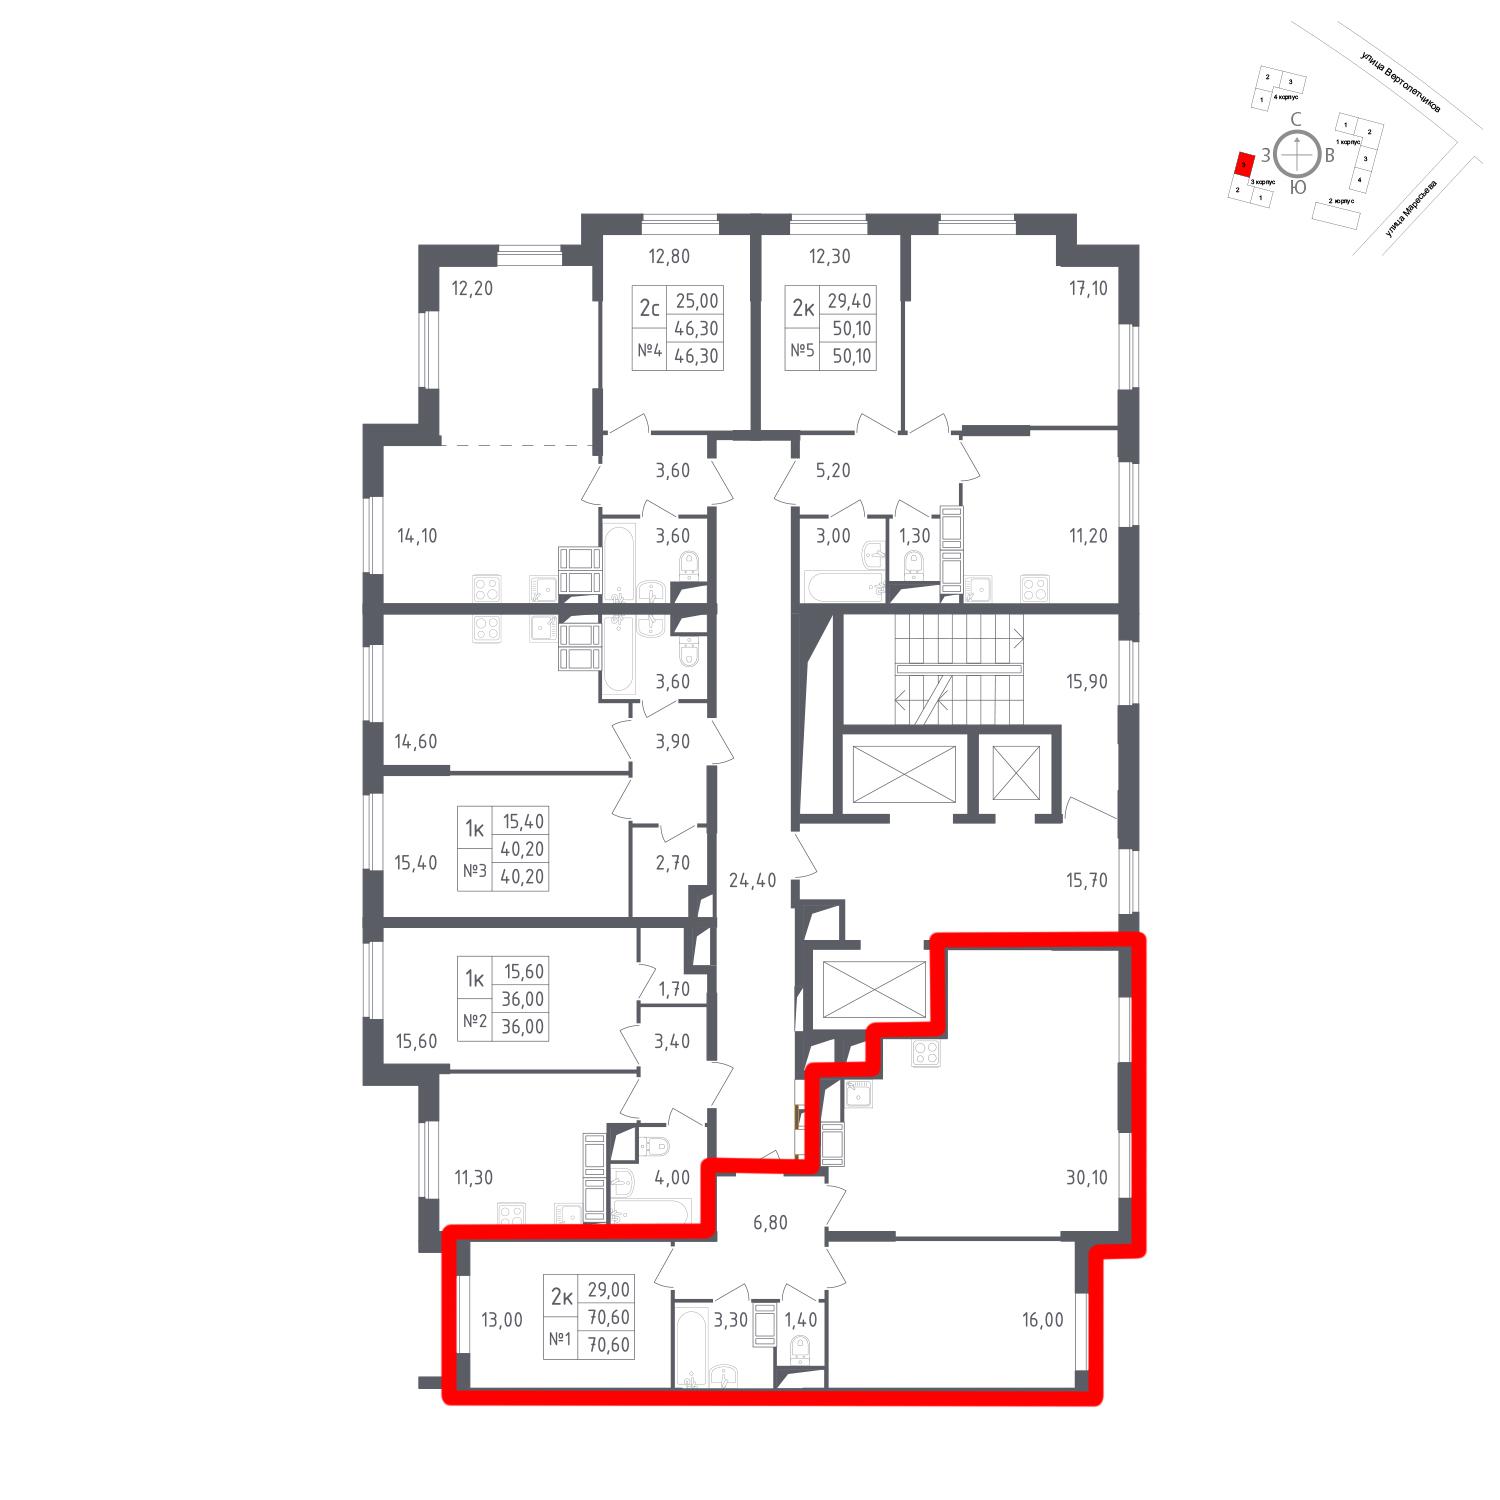 Продаётся 2-комнатная квартира в новостройке 70.6 кв.м. этаж 16/23 за 15 970 920 руб 